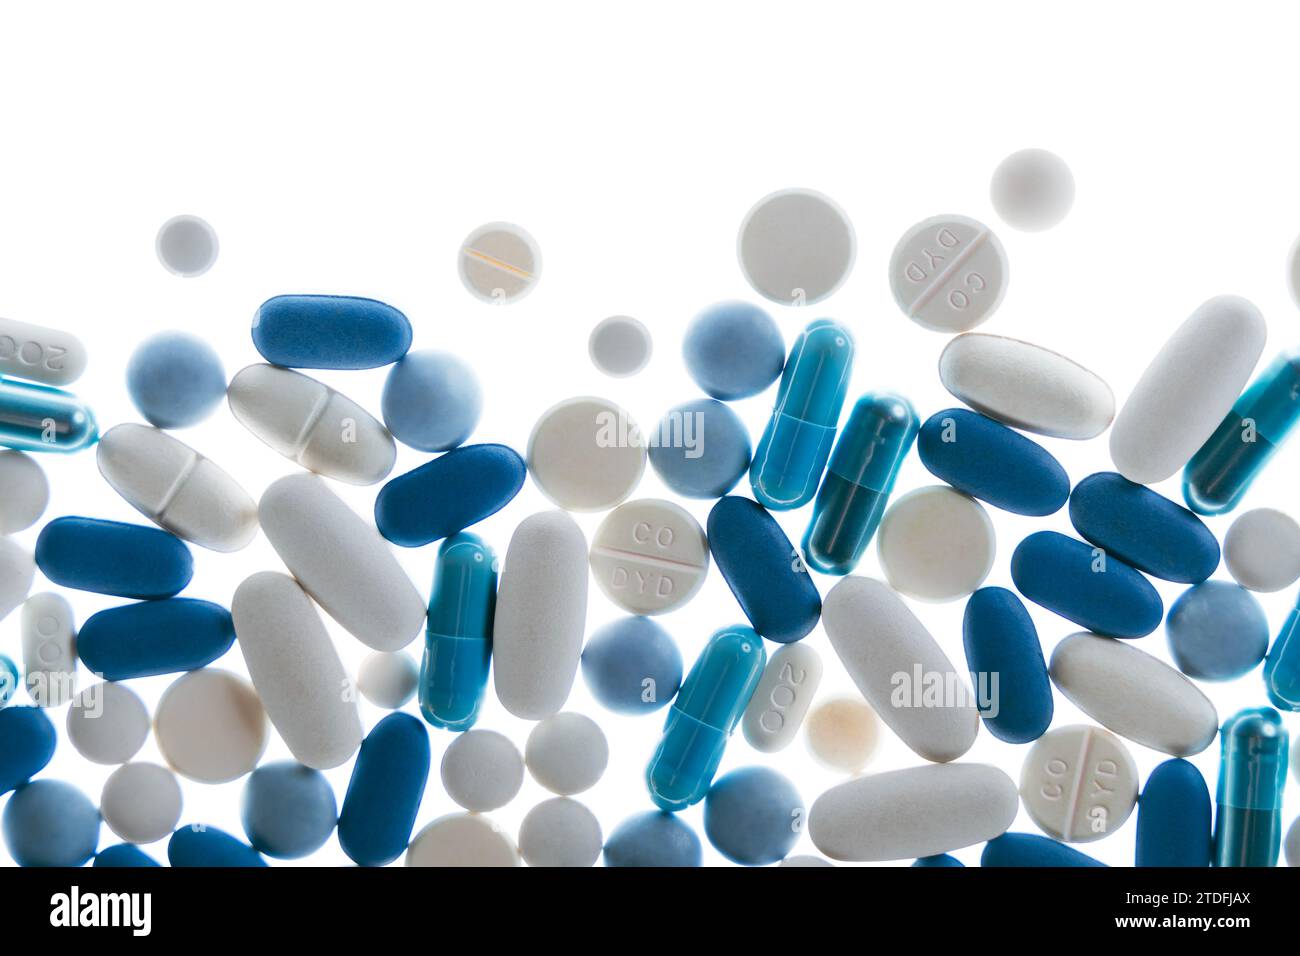 Pilules et comprimés bleus et blancs sur fond blanc Banque D'Images